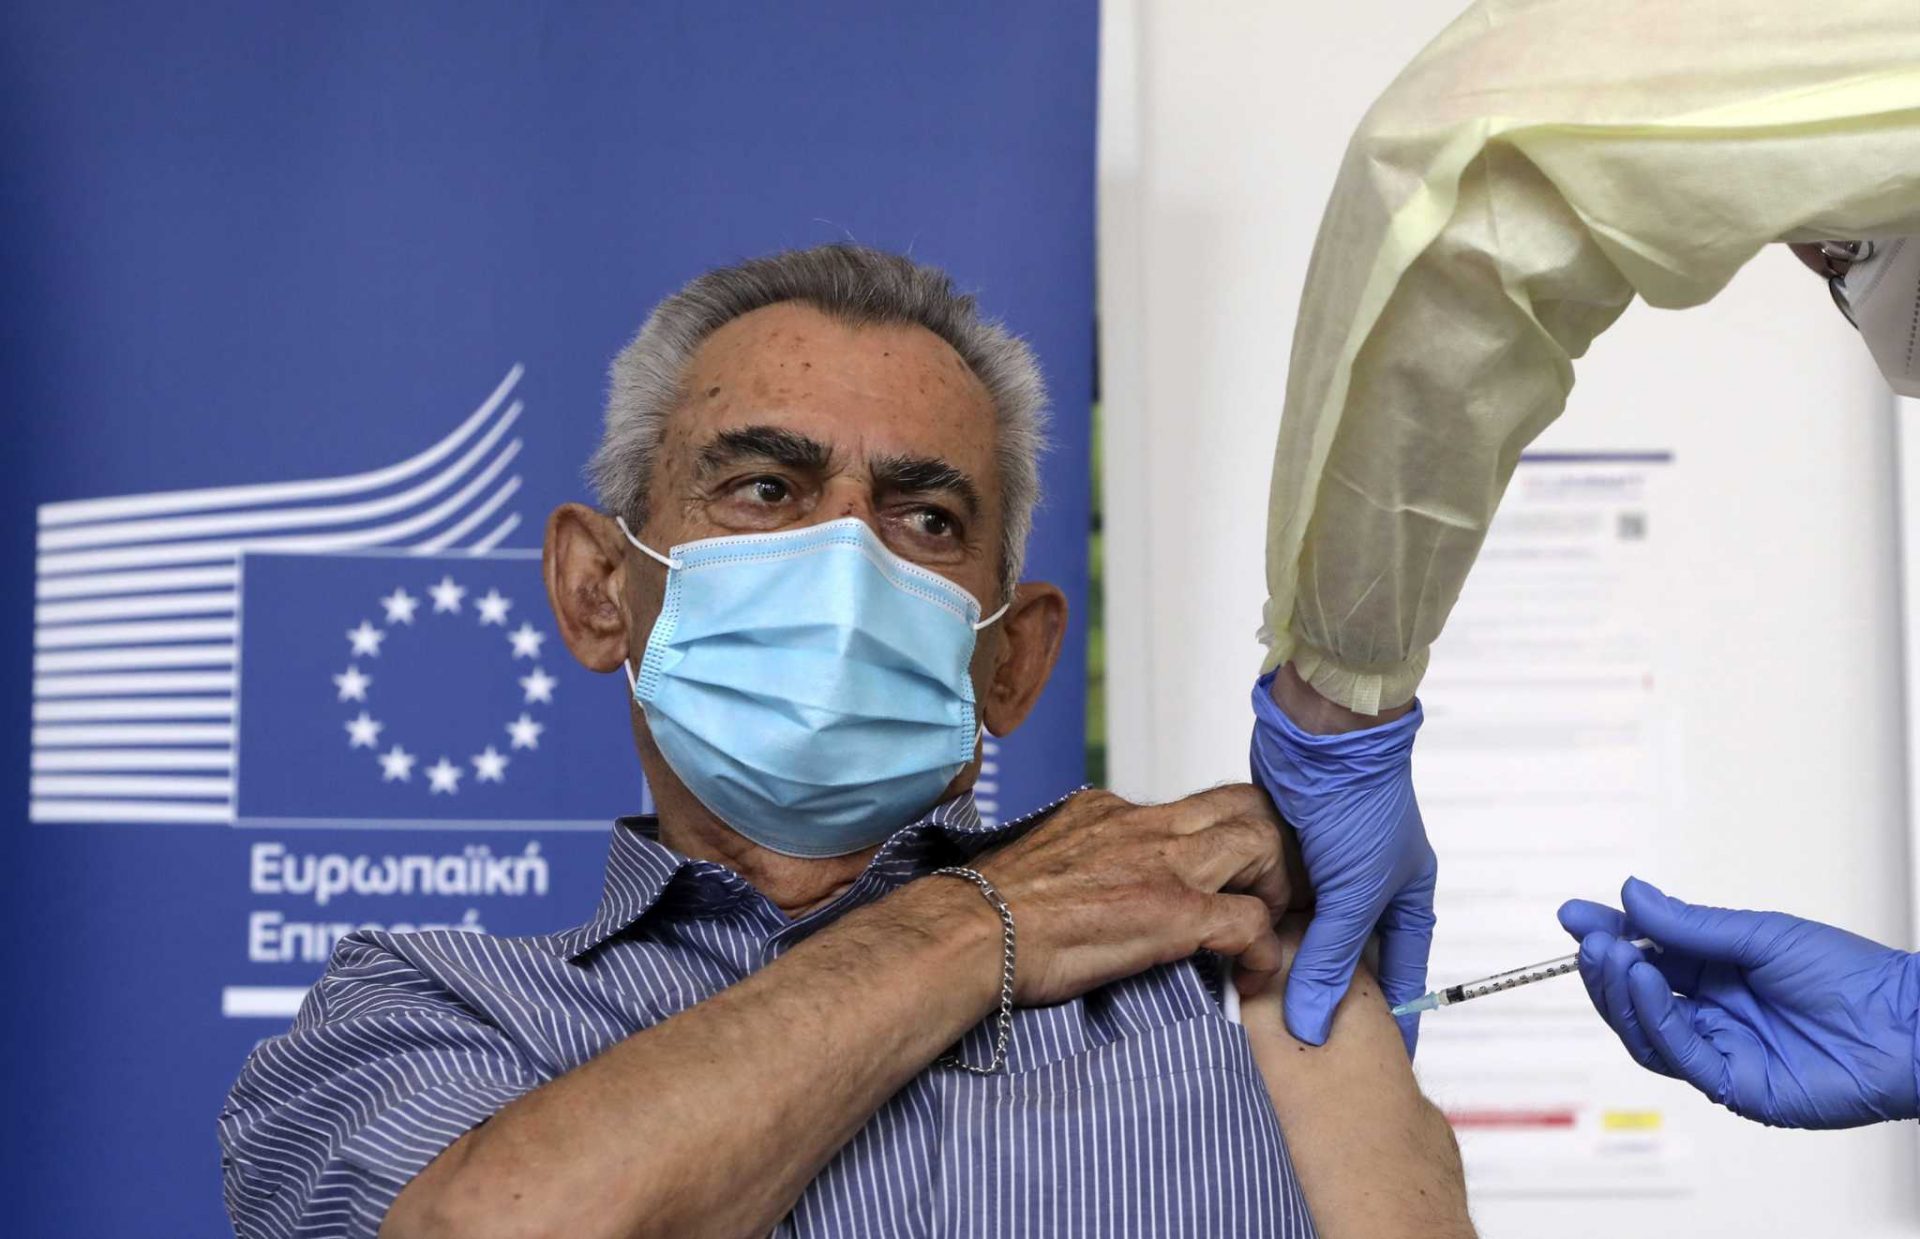 ‘Factor in in science’: EU kicks off COVID-19 vaccine campaign